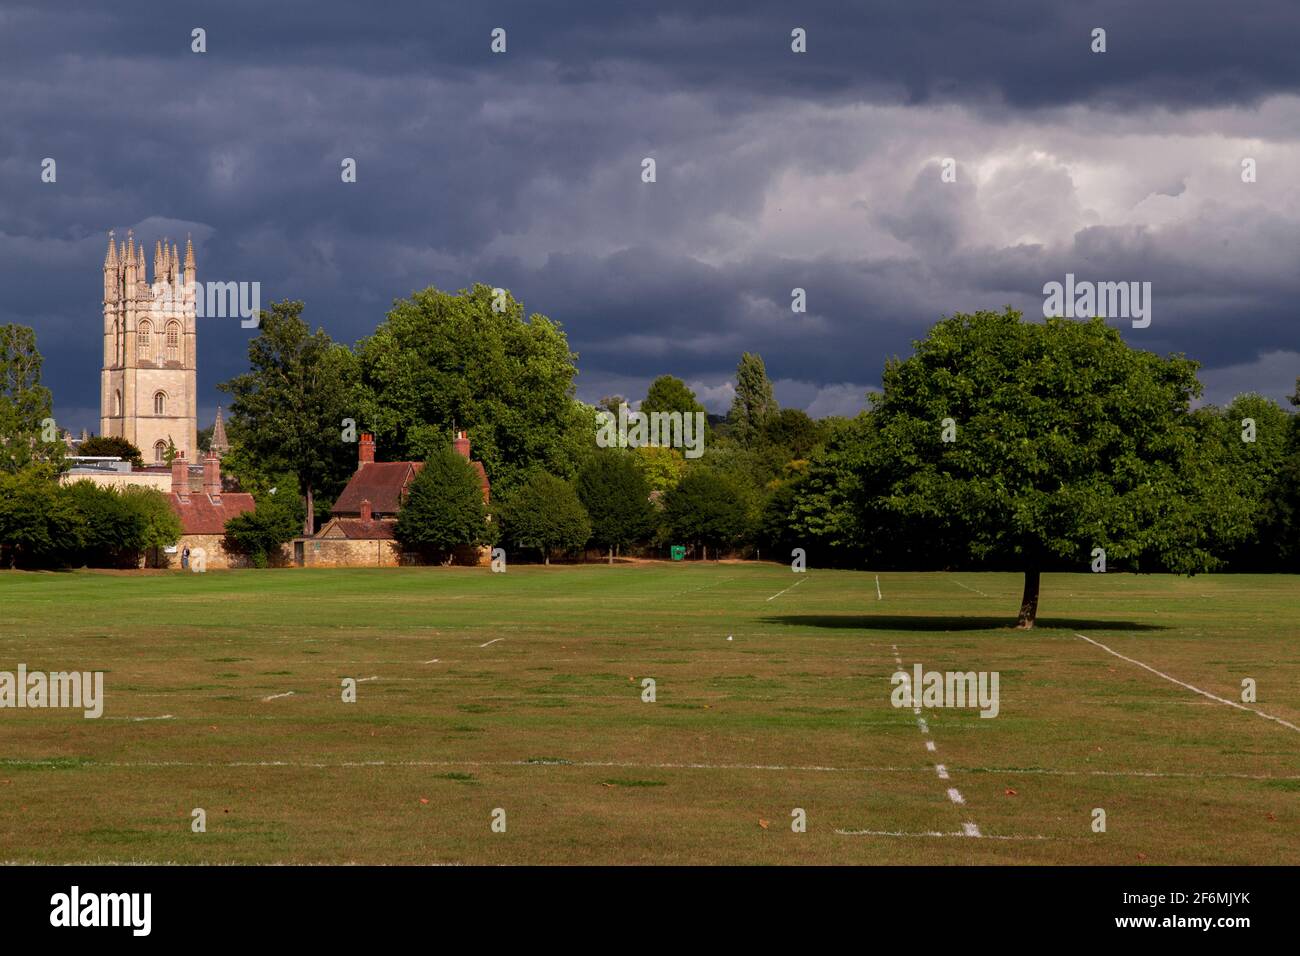 Tiro ancho de un campo deportivo rodeado de árboles y algunos pequeñas casas y la torre de la iglesia en el fondo en un día soleado con un cielo nublado Foto de stock